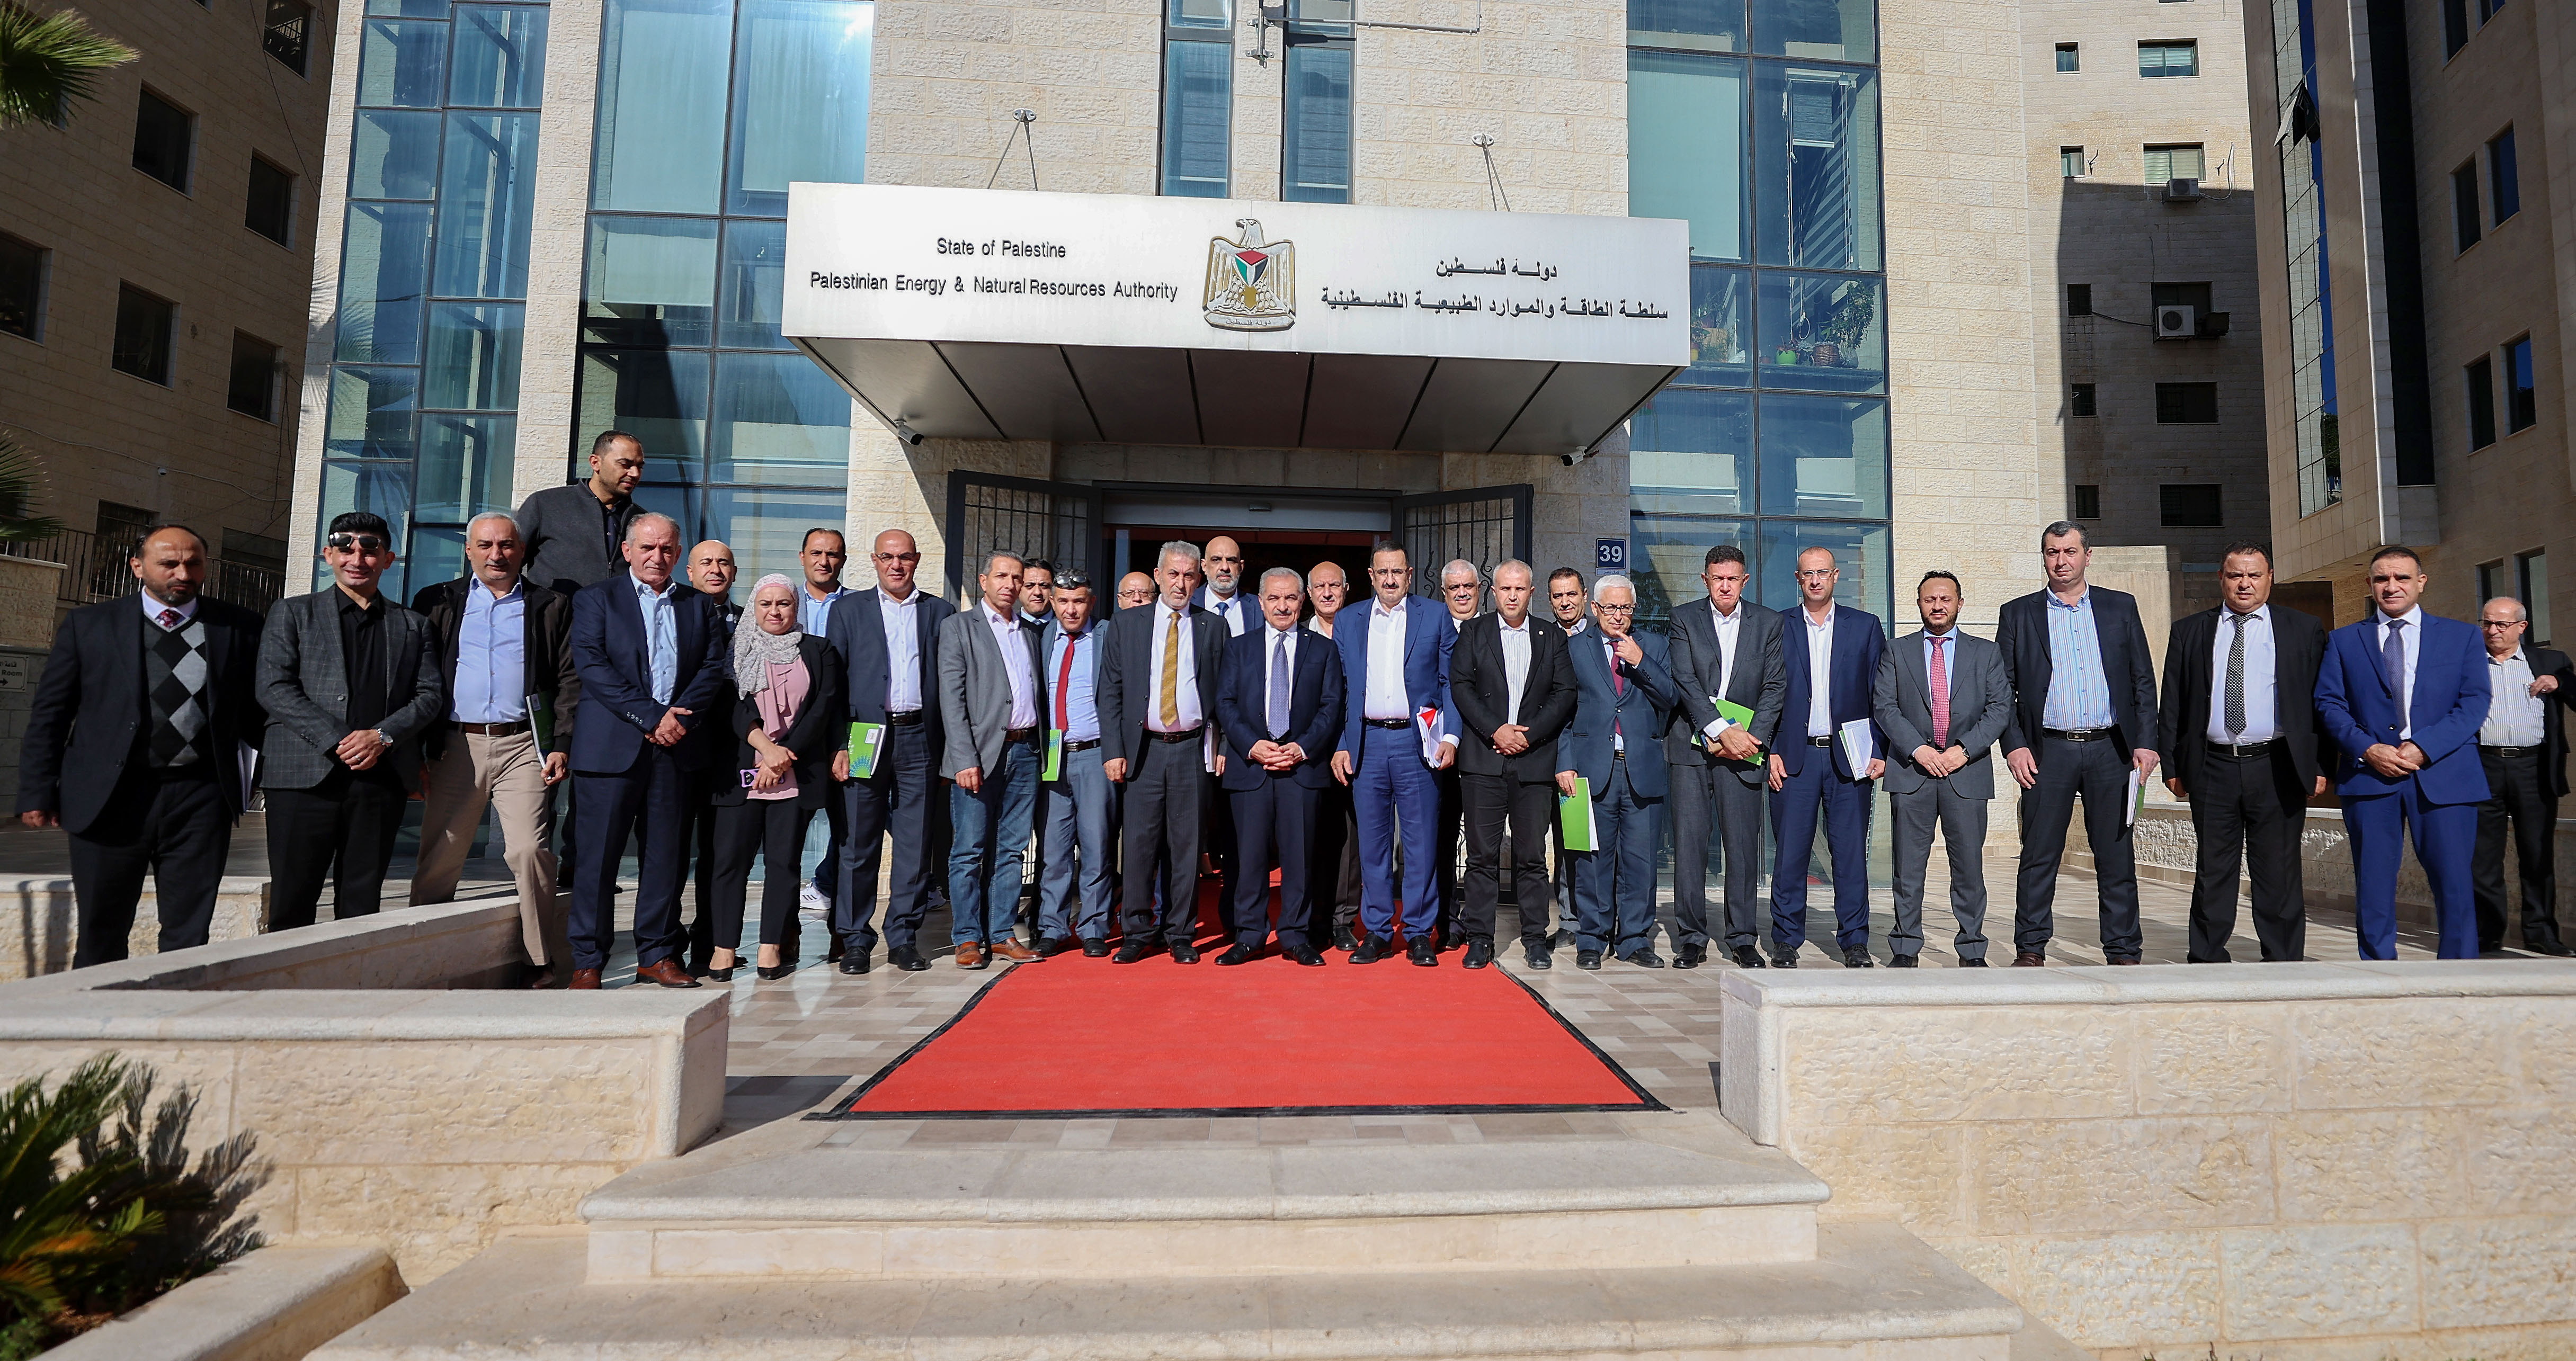 اجتماع برئاسة محمد اشية يوصي بتأسيس شركة كهرباء فلسطين